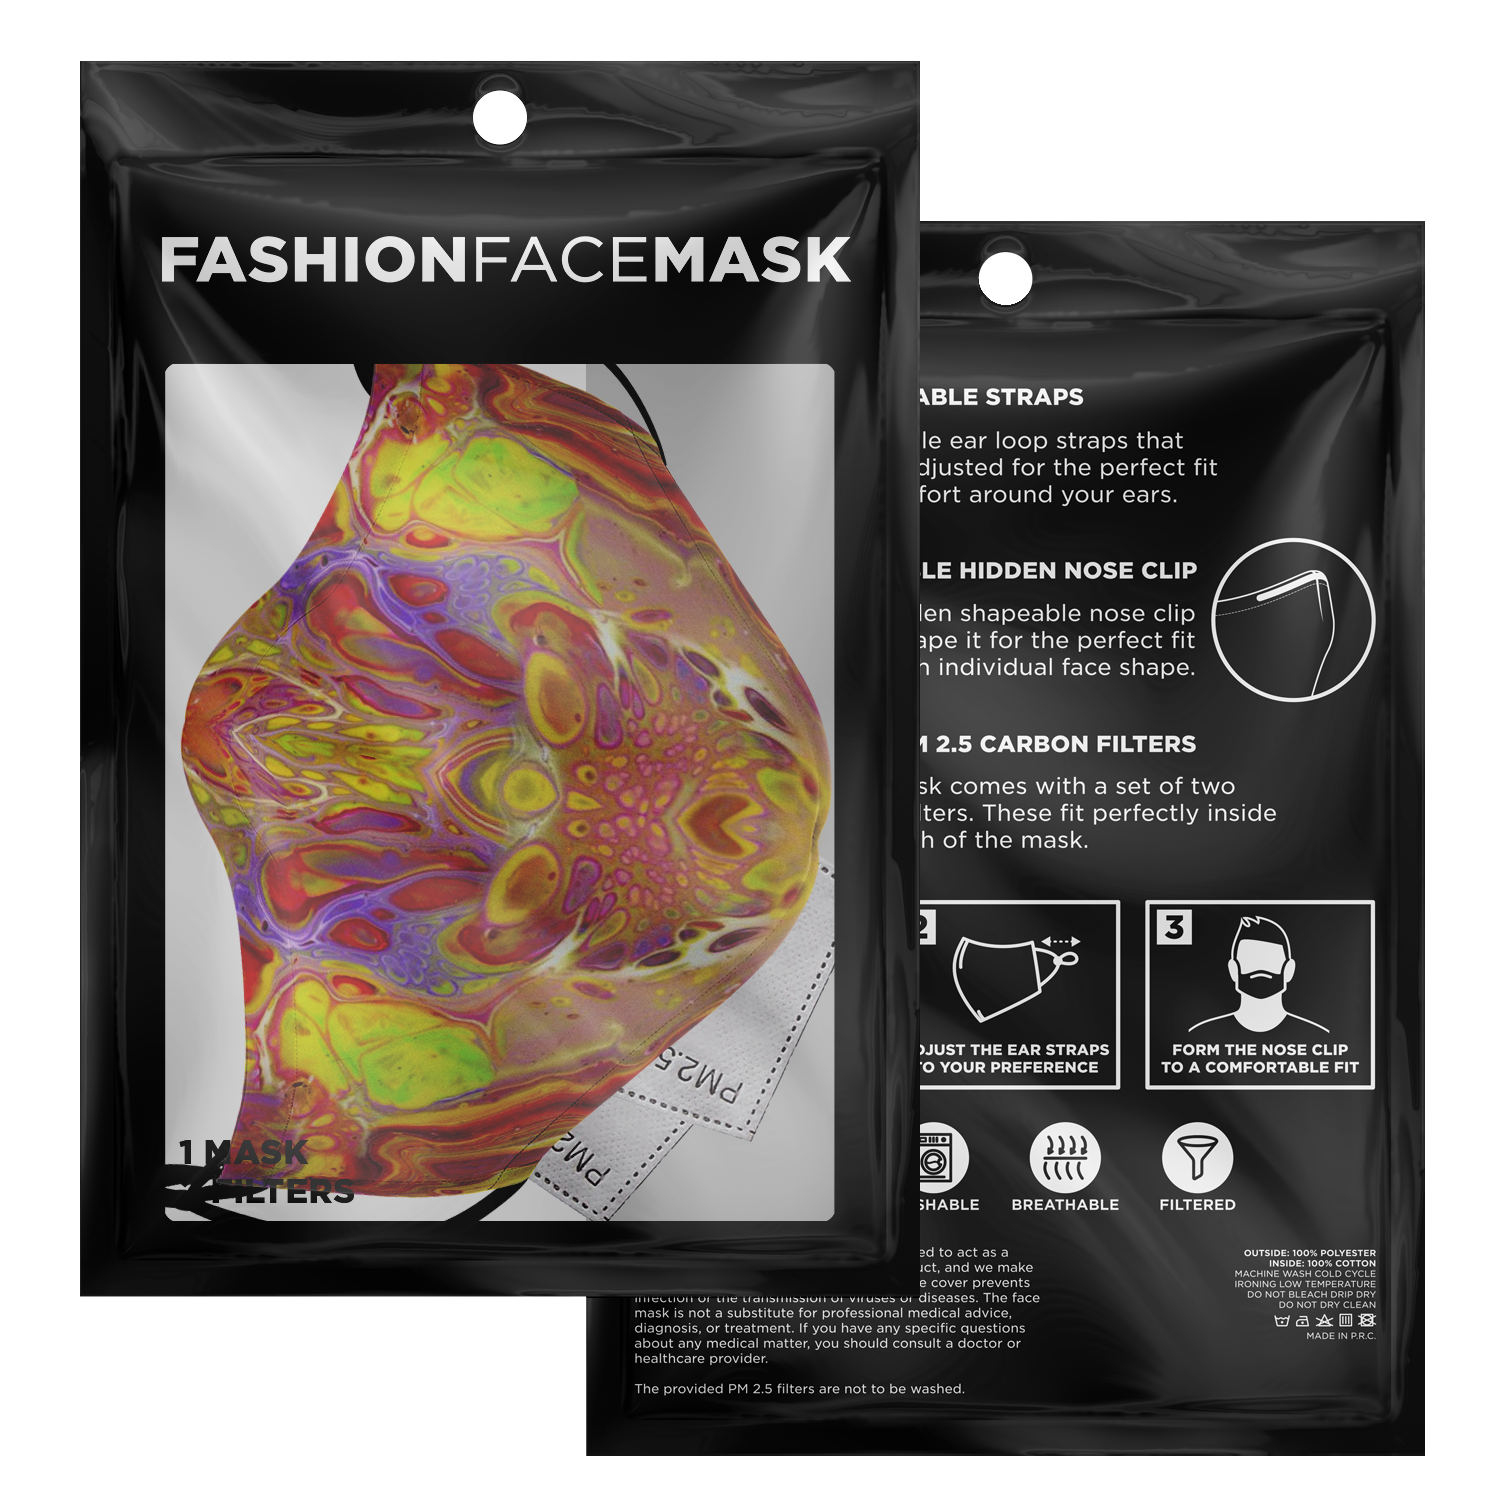 Mandala Melt Face Masks